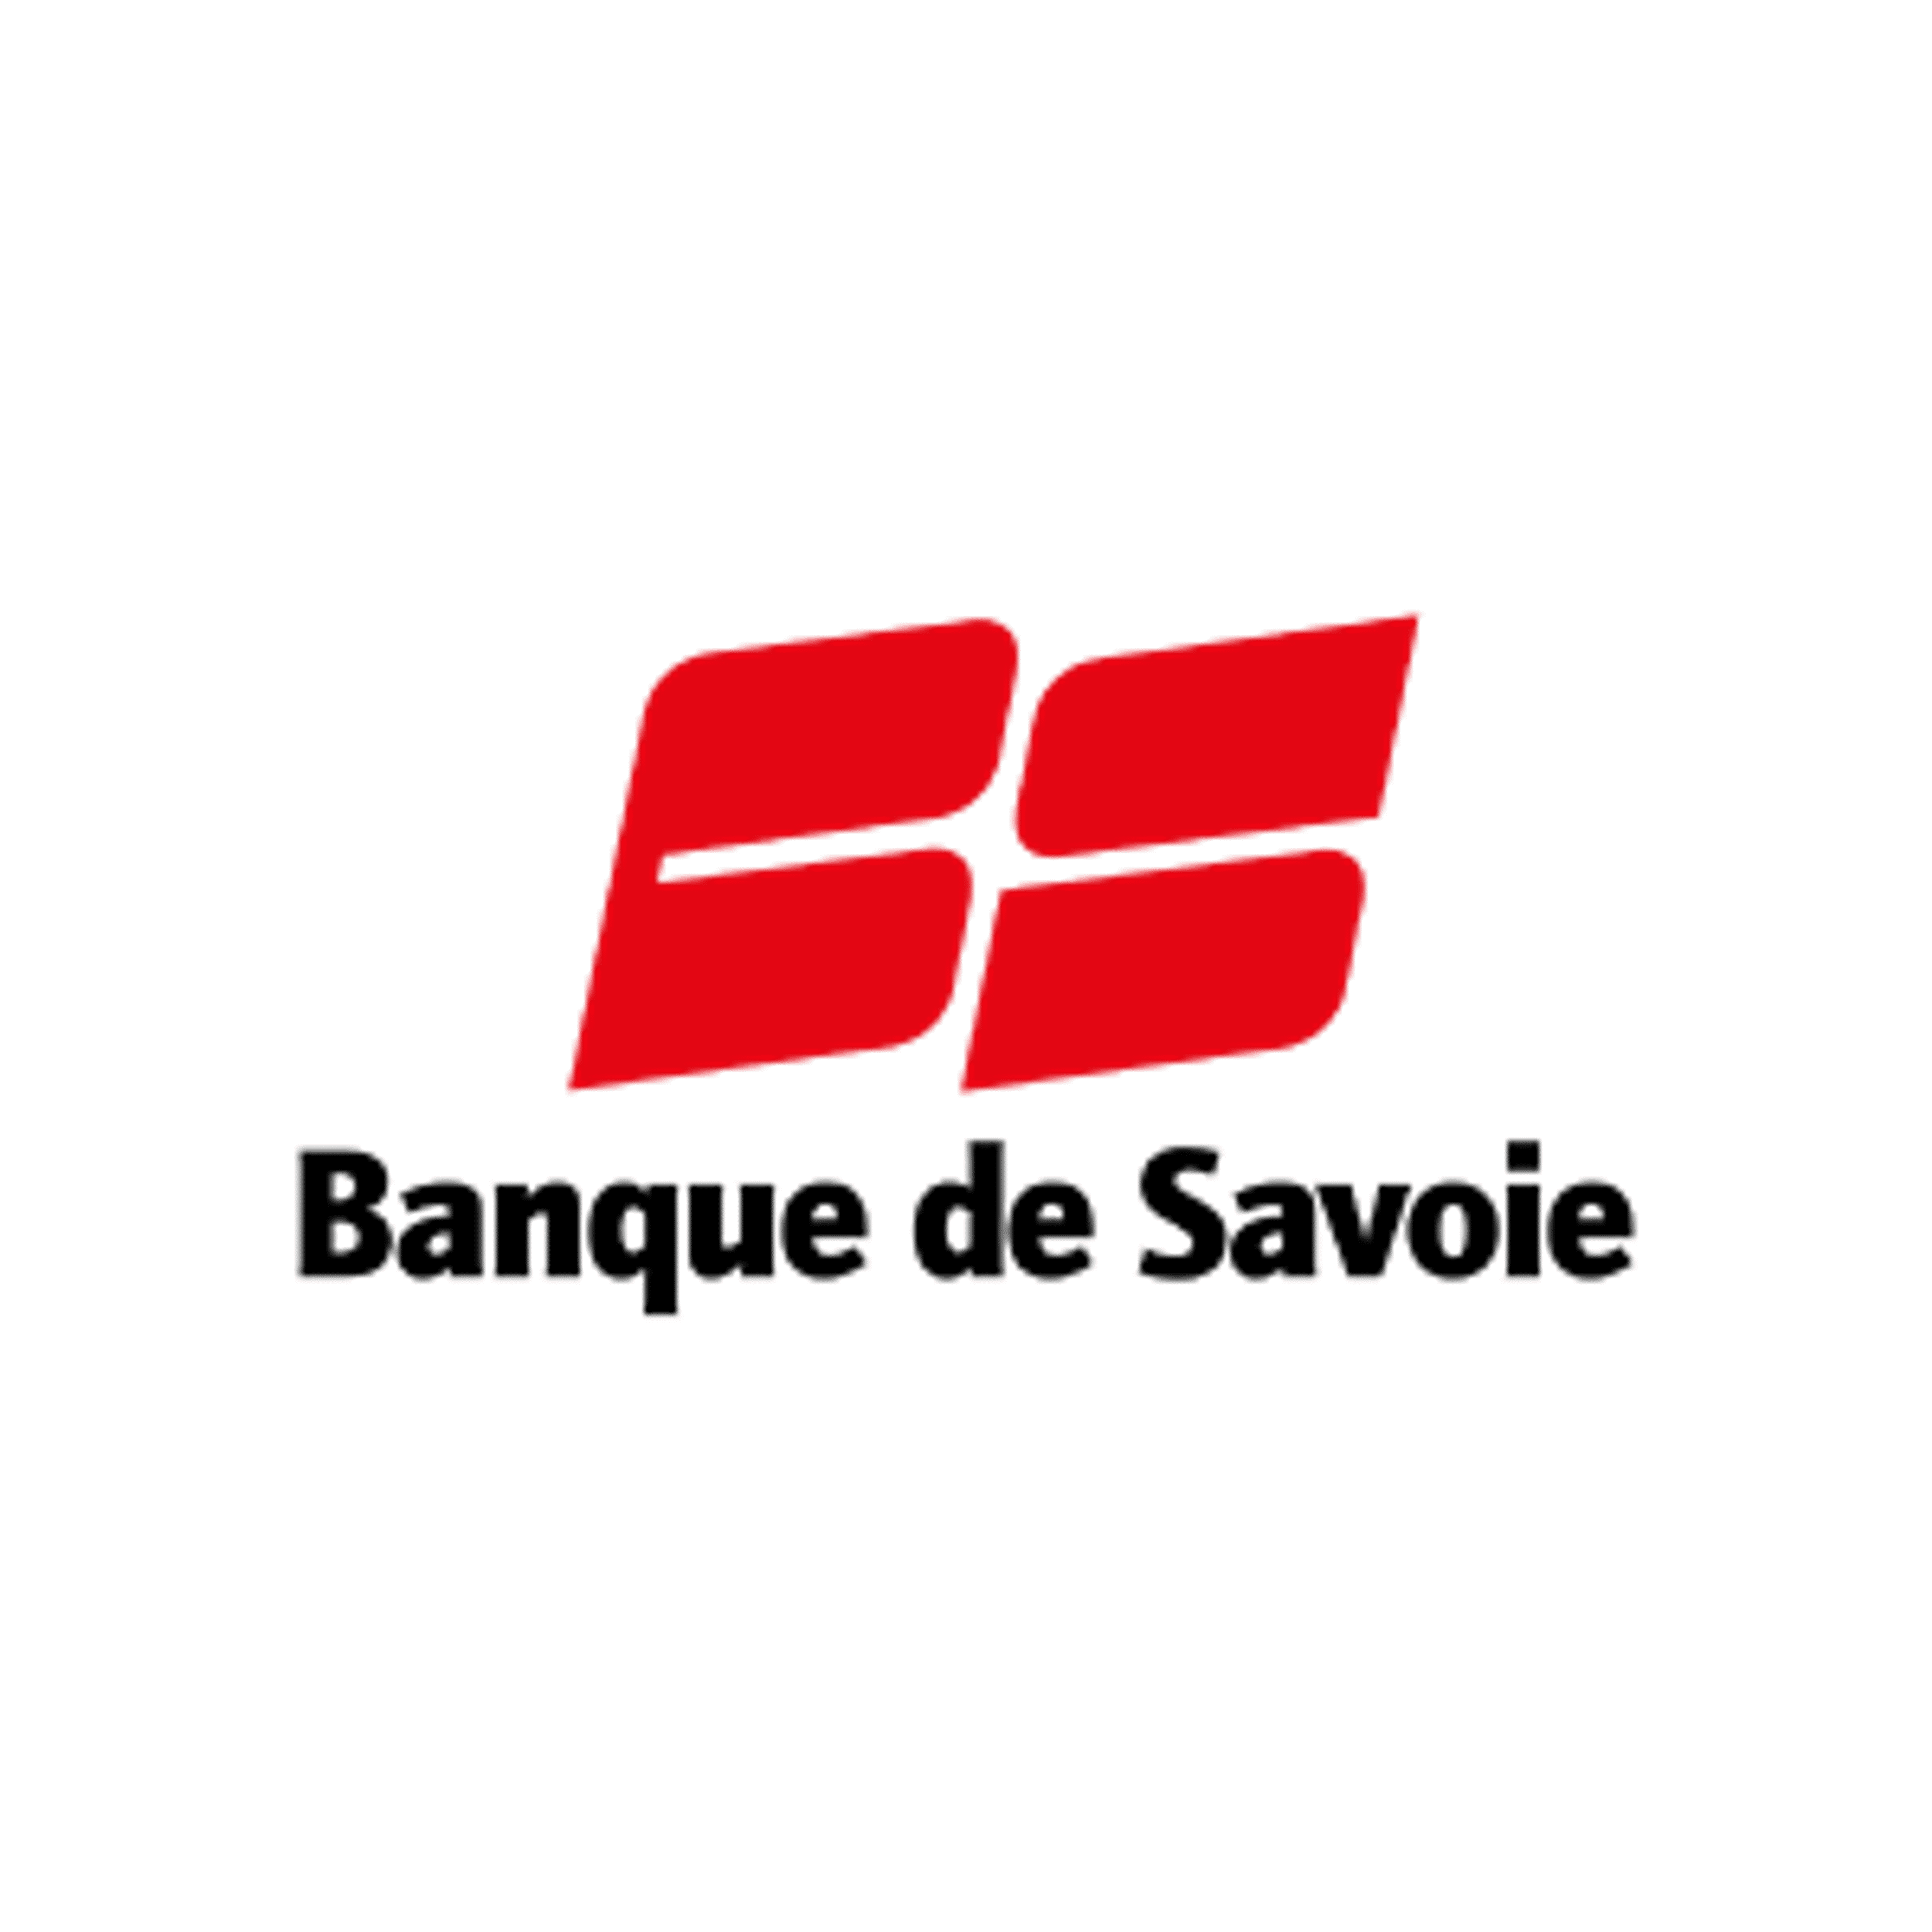 Banquede Savoie